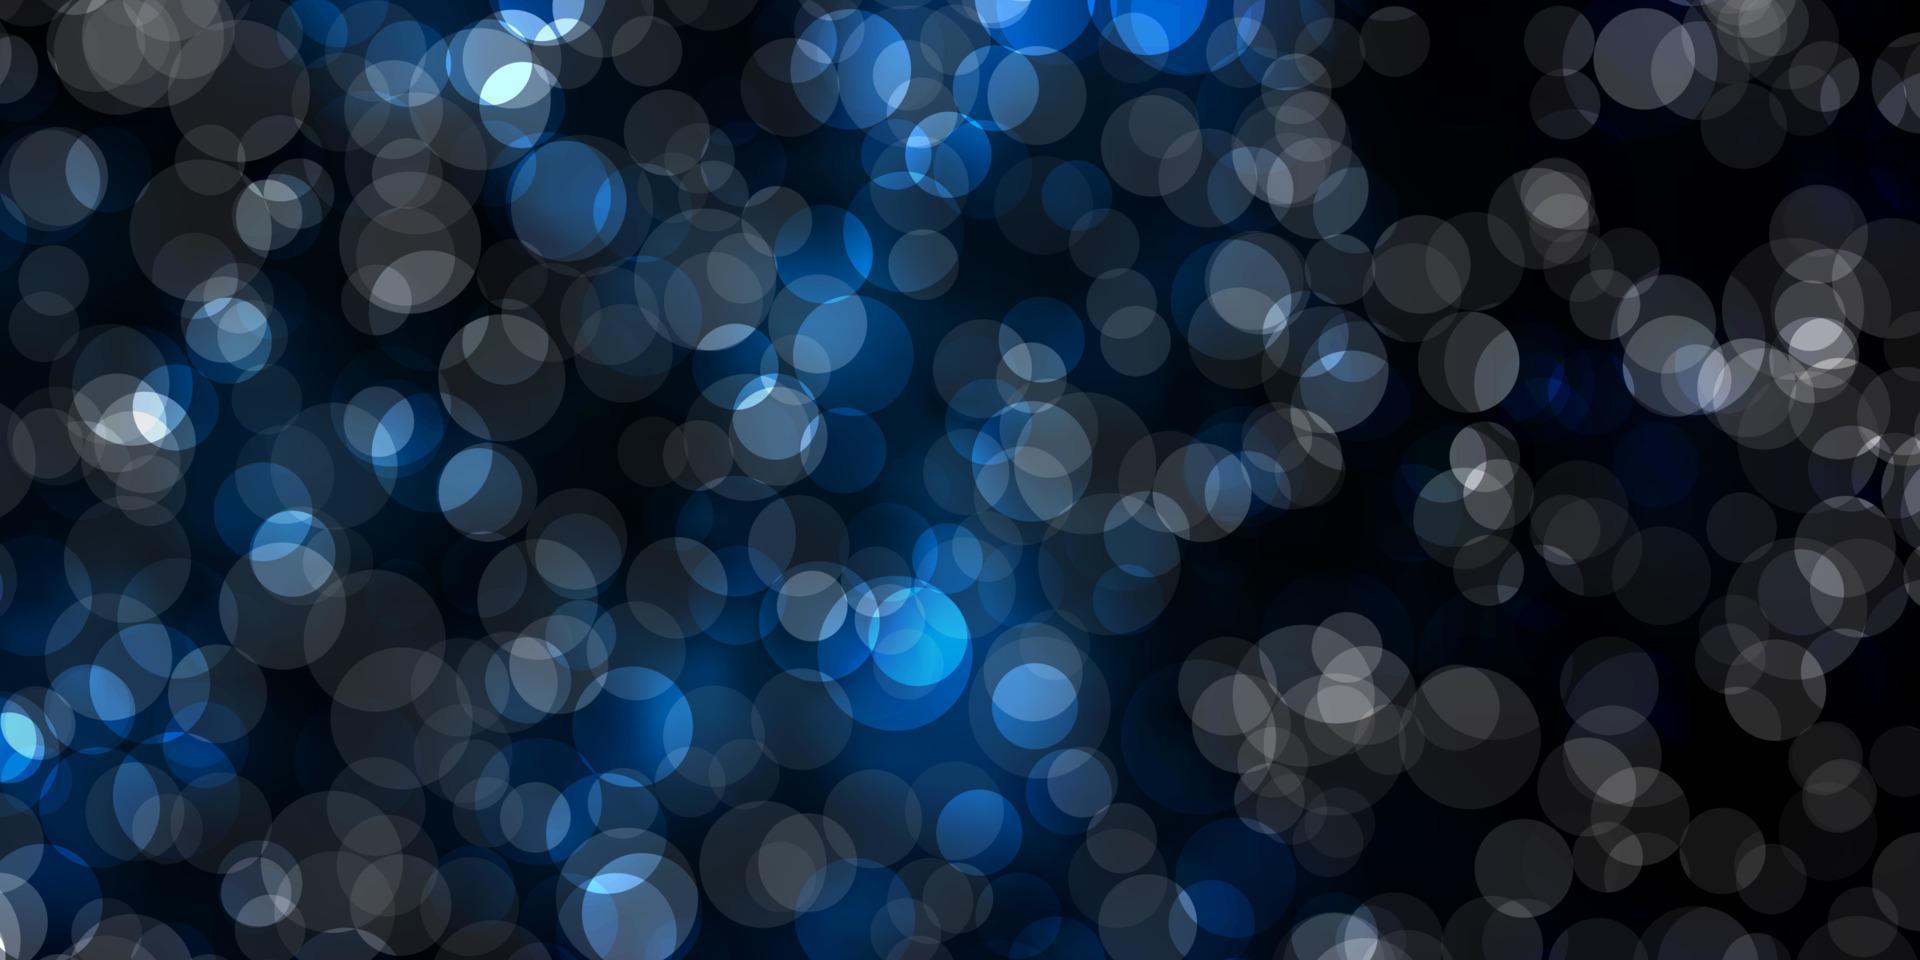 sfondo vettoriale blu scuro con macchie.